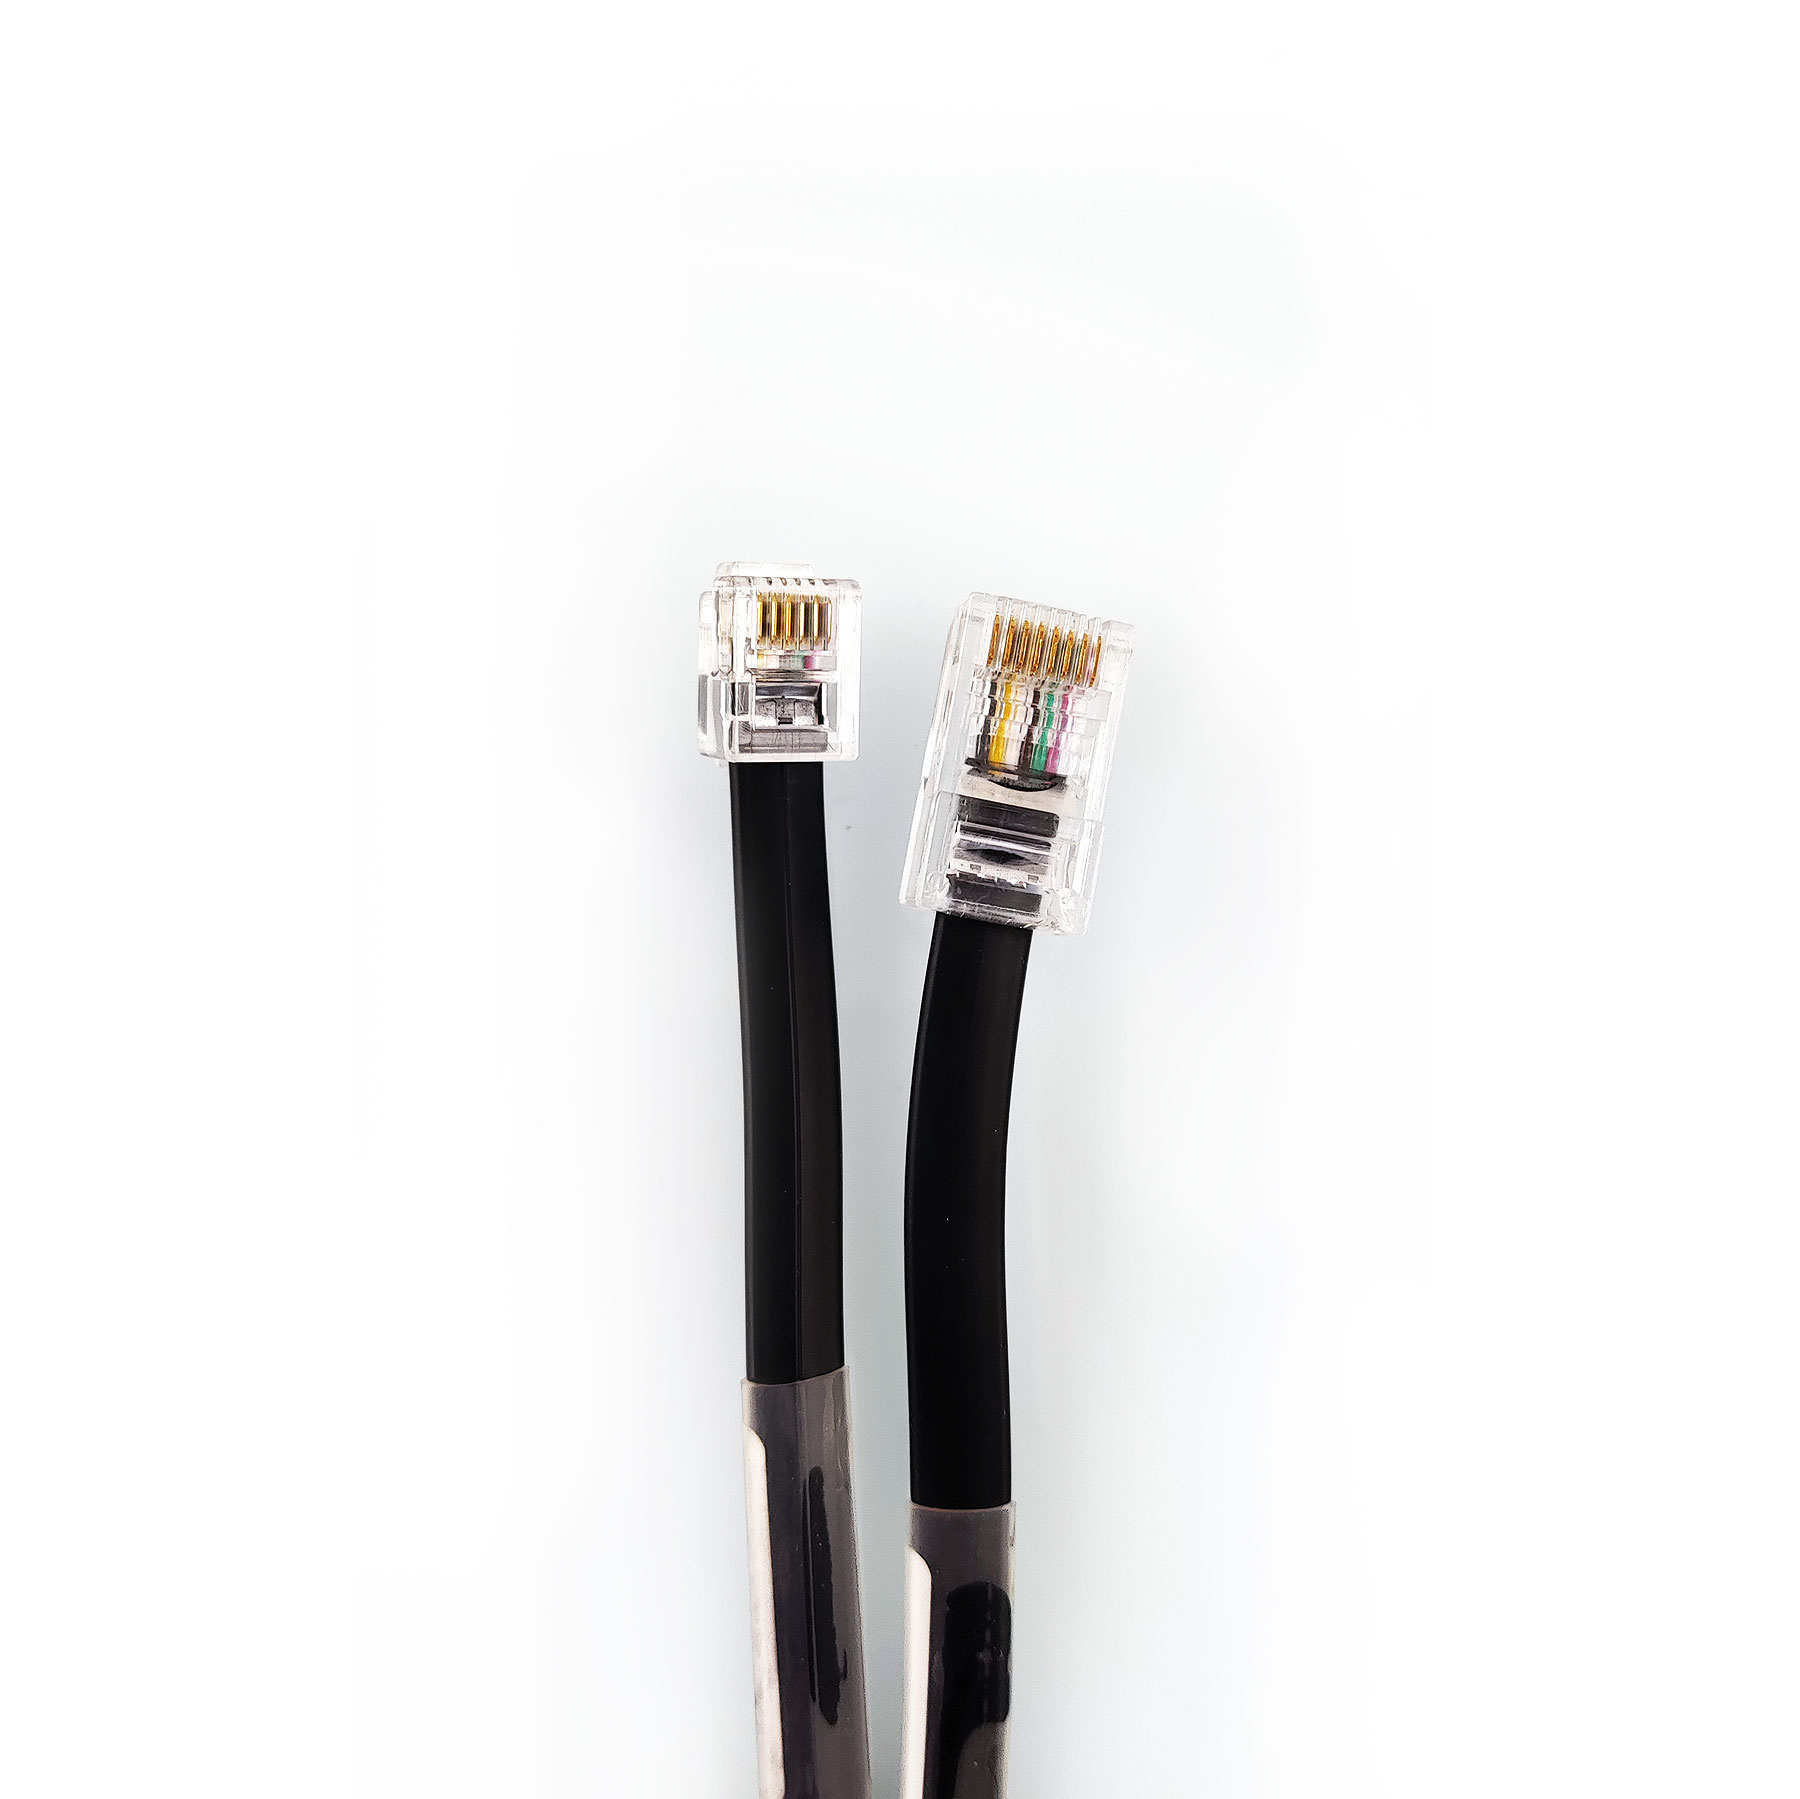 Kabel für Swiss / Powerflarm zu LX Zeus oder Variometer